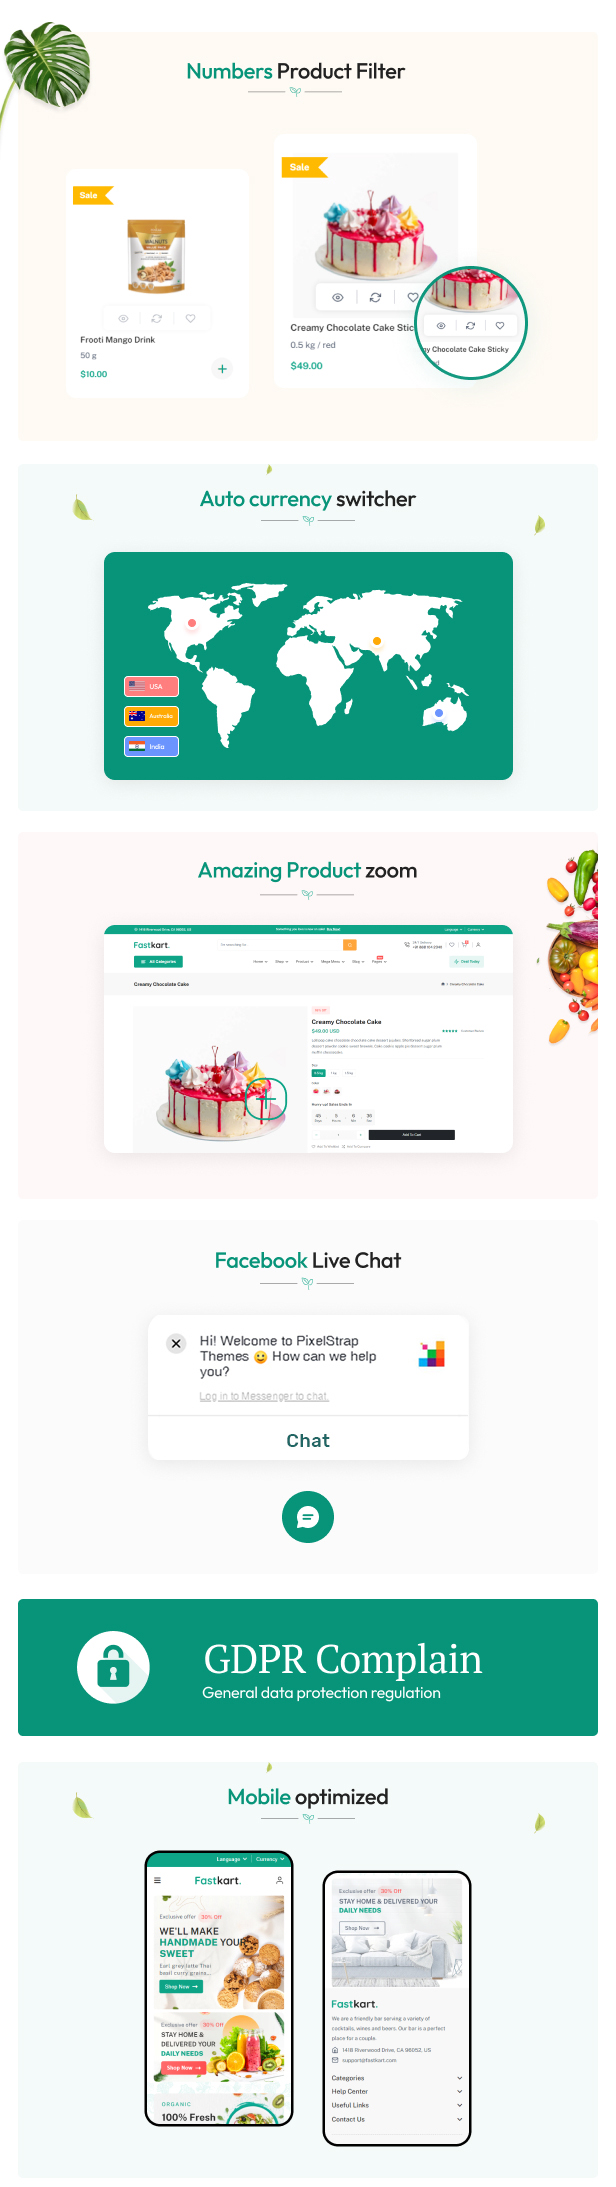 Fastkart Petstore and Petfood Responsive Shopify Theme